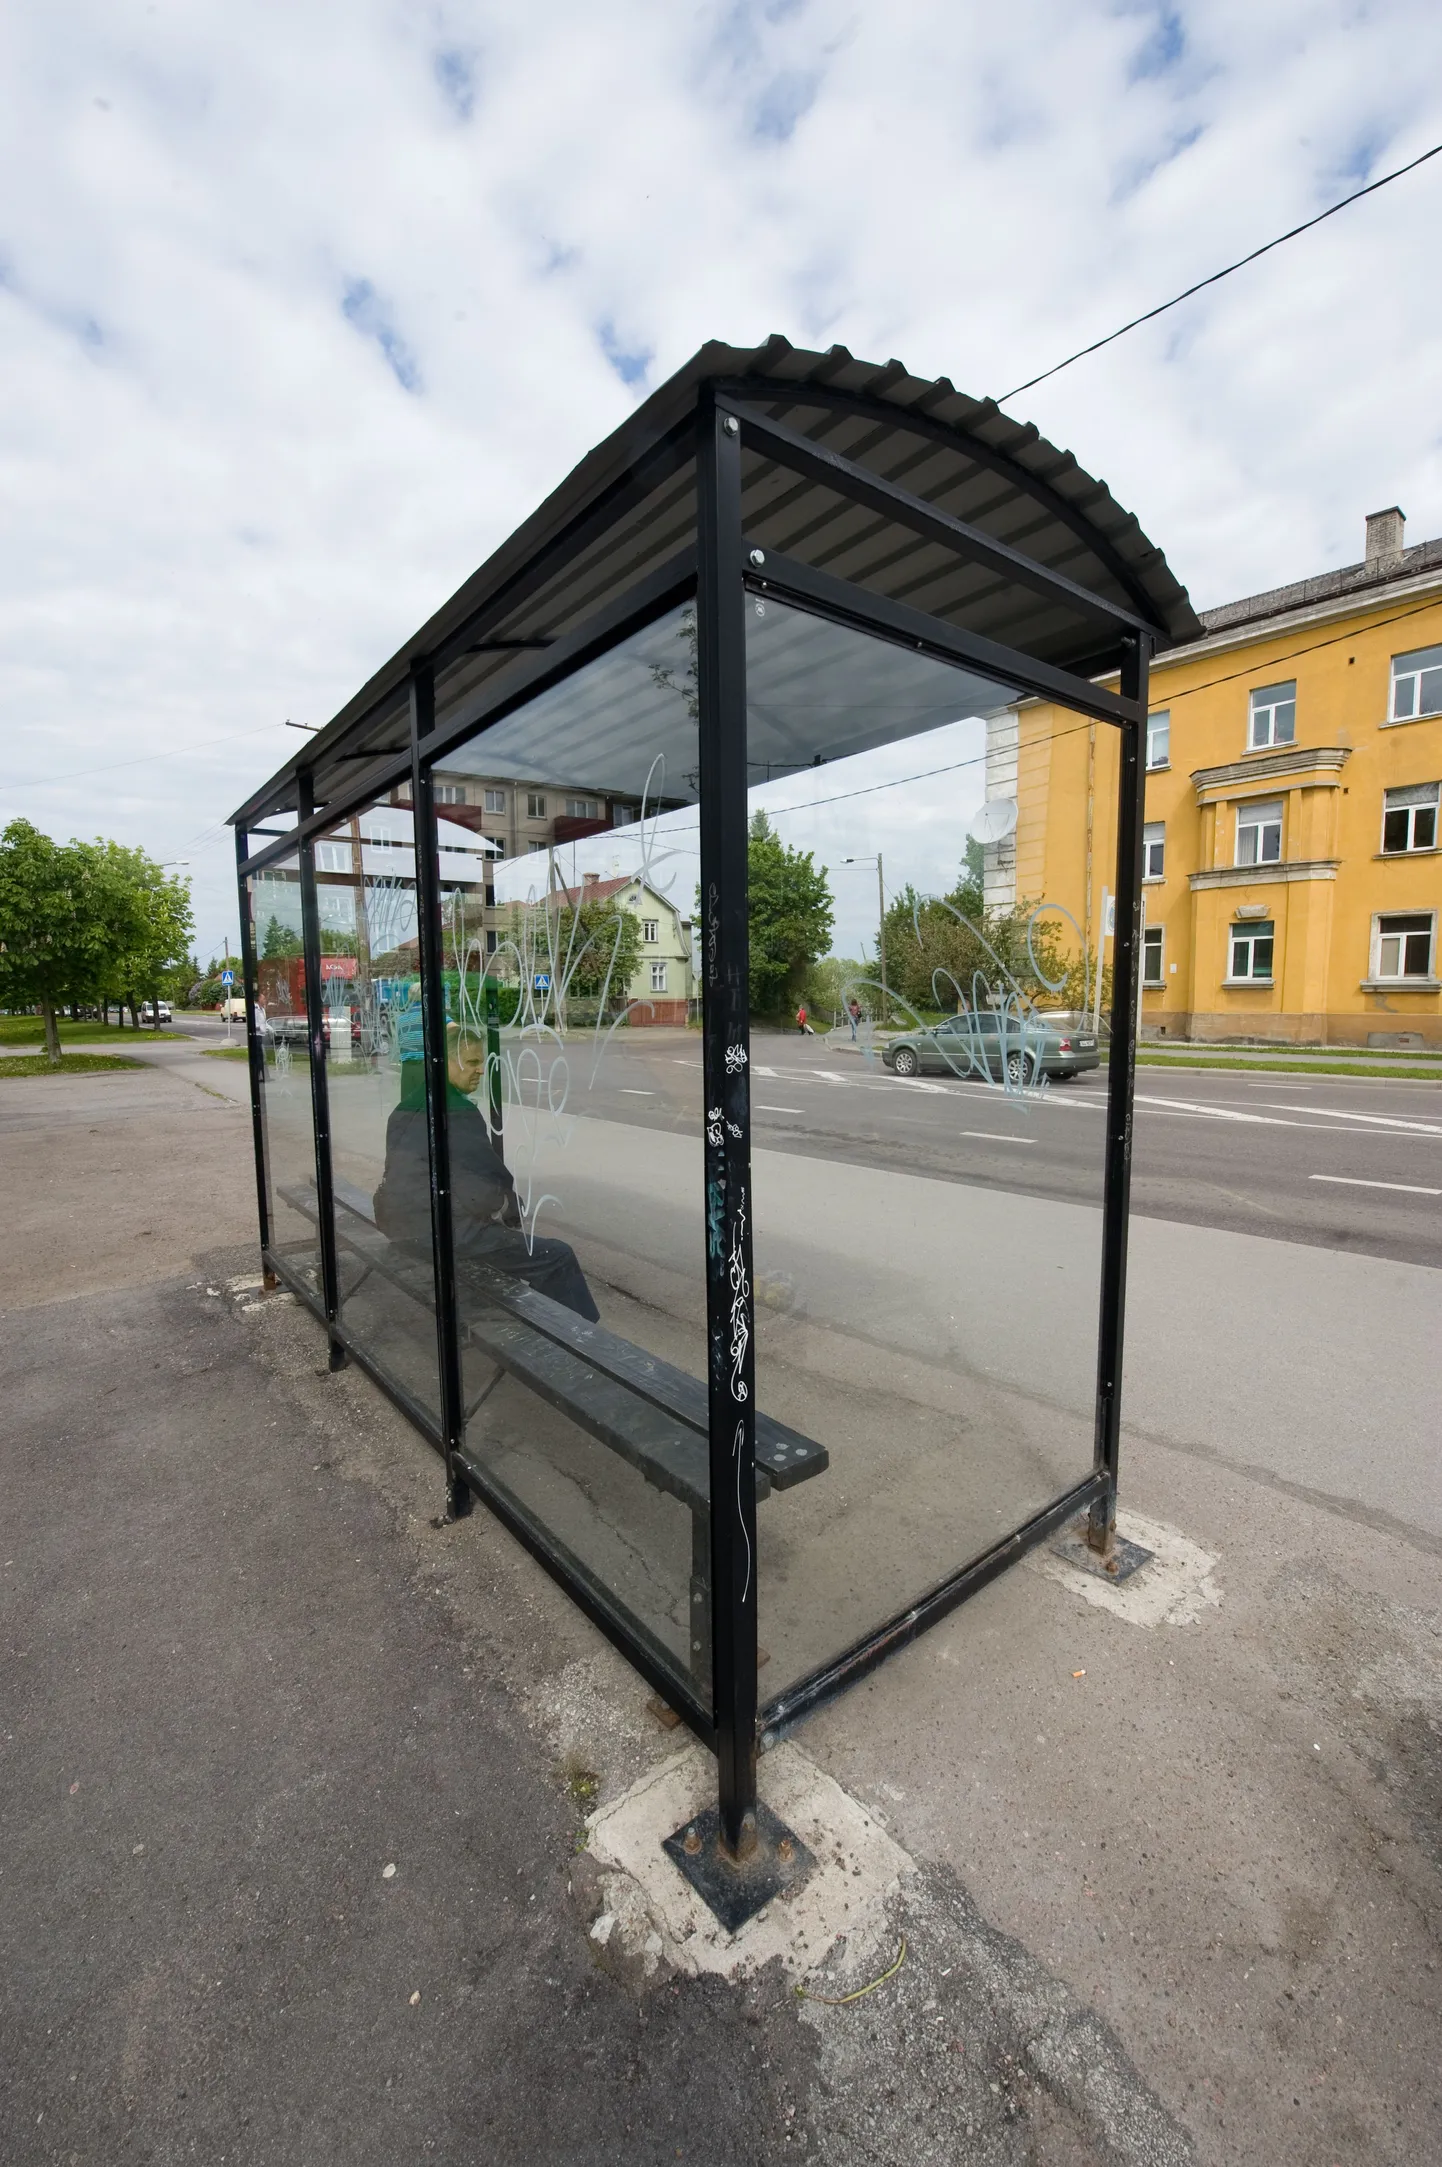 Автобусная остановка на улице Теэстузе. Иллюстративный снимок.